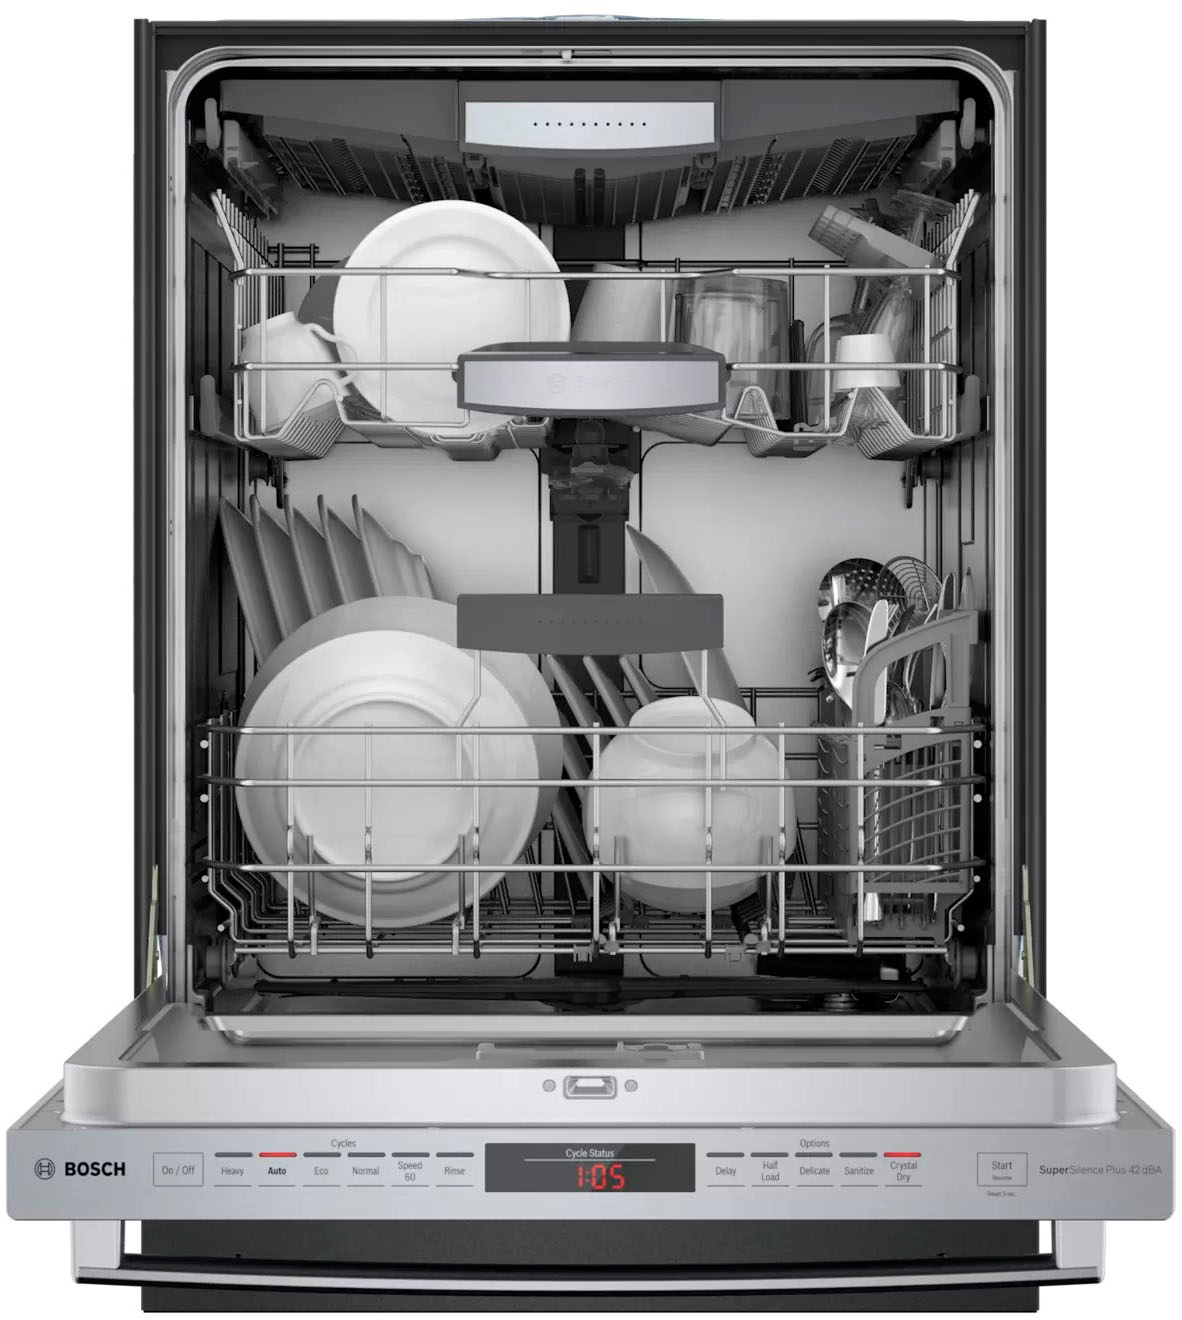 Aperçu du lave-vaisselle Série 800 de Bosch - Blogue Best Buy